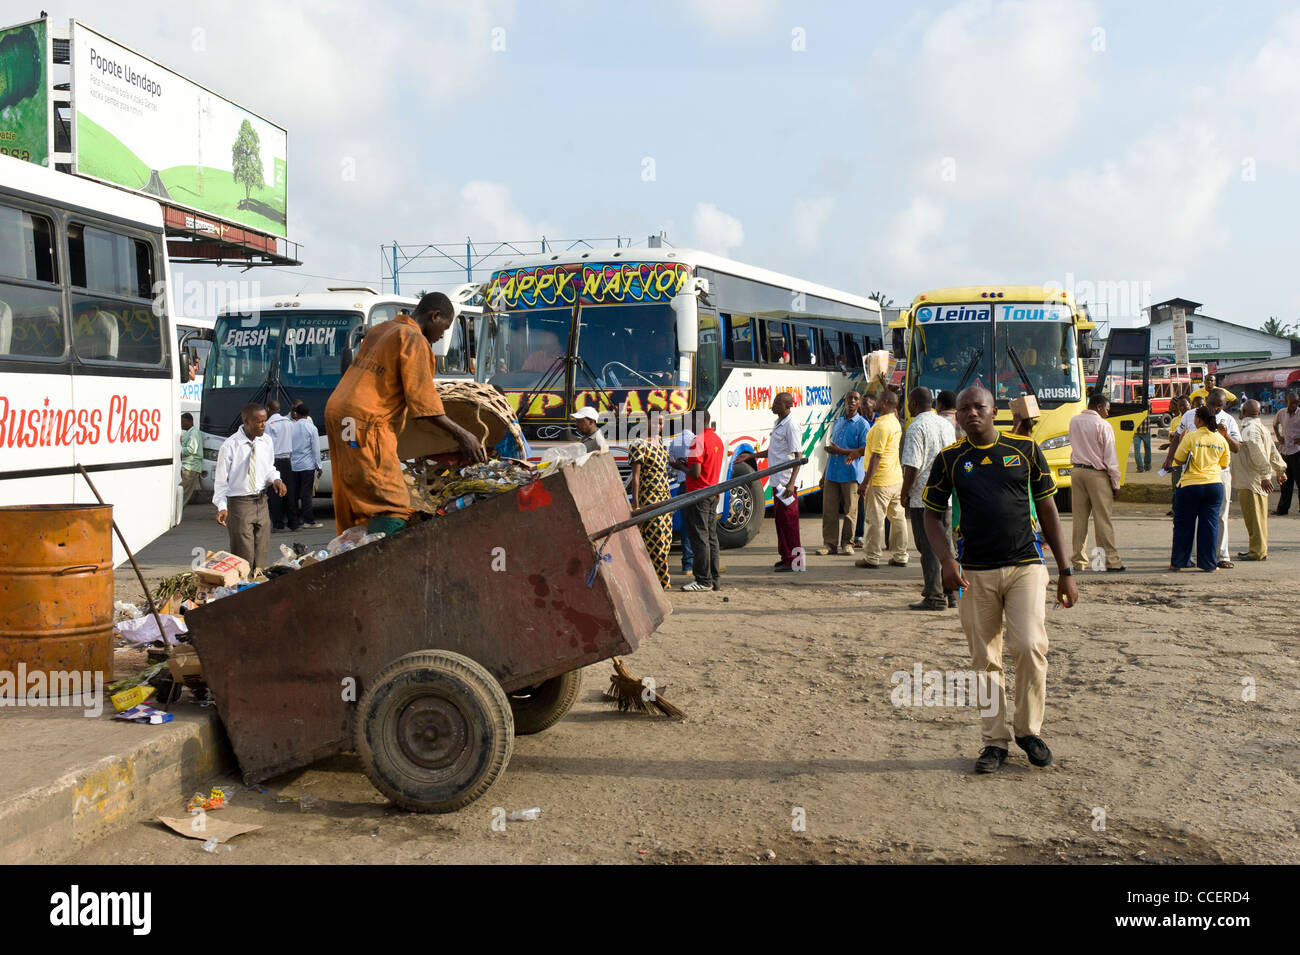 Straßenbahn Salaam Dar es halle in Dar es